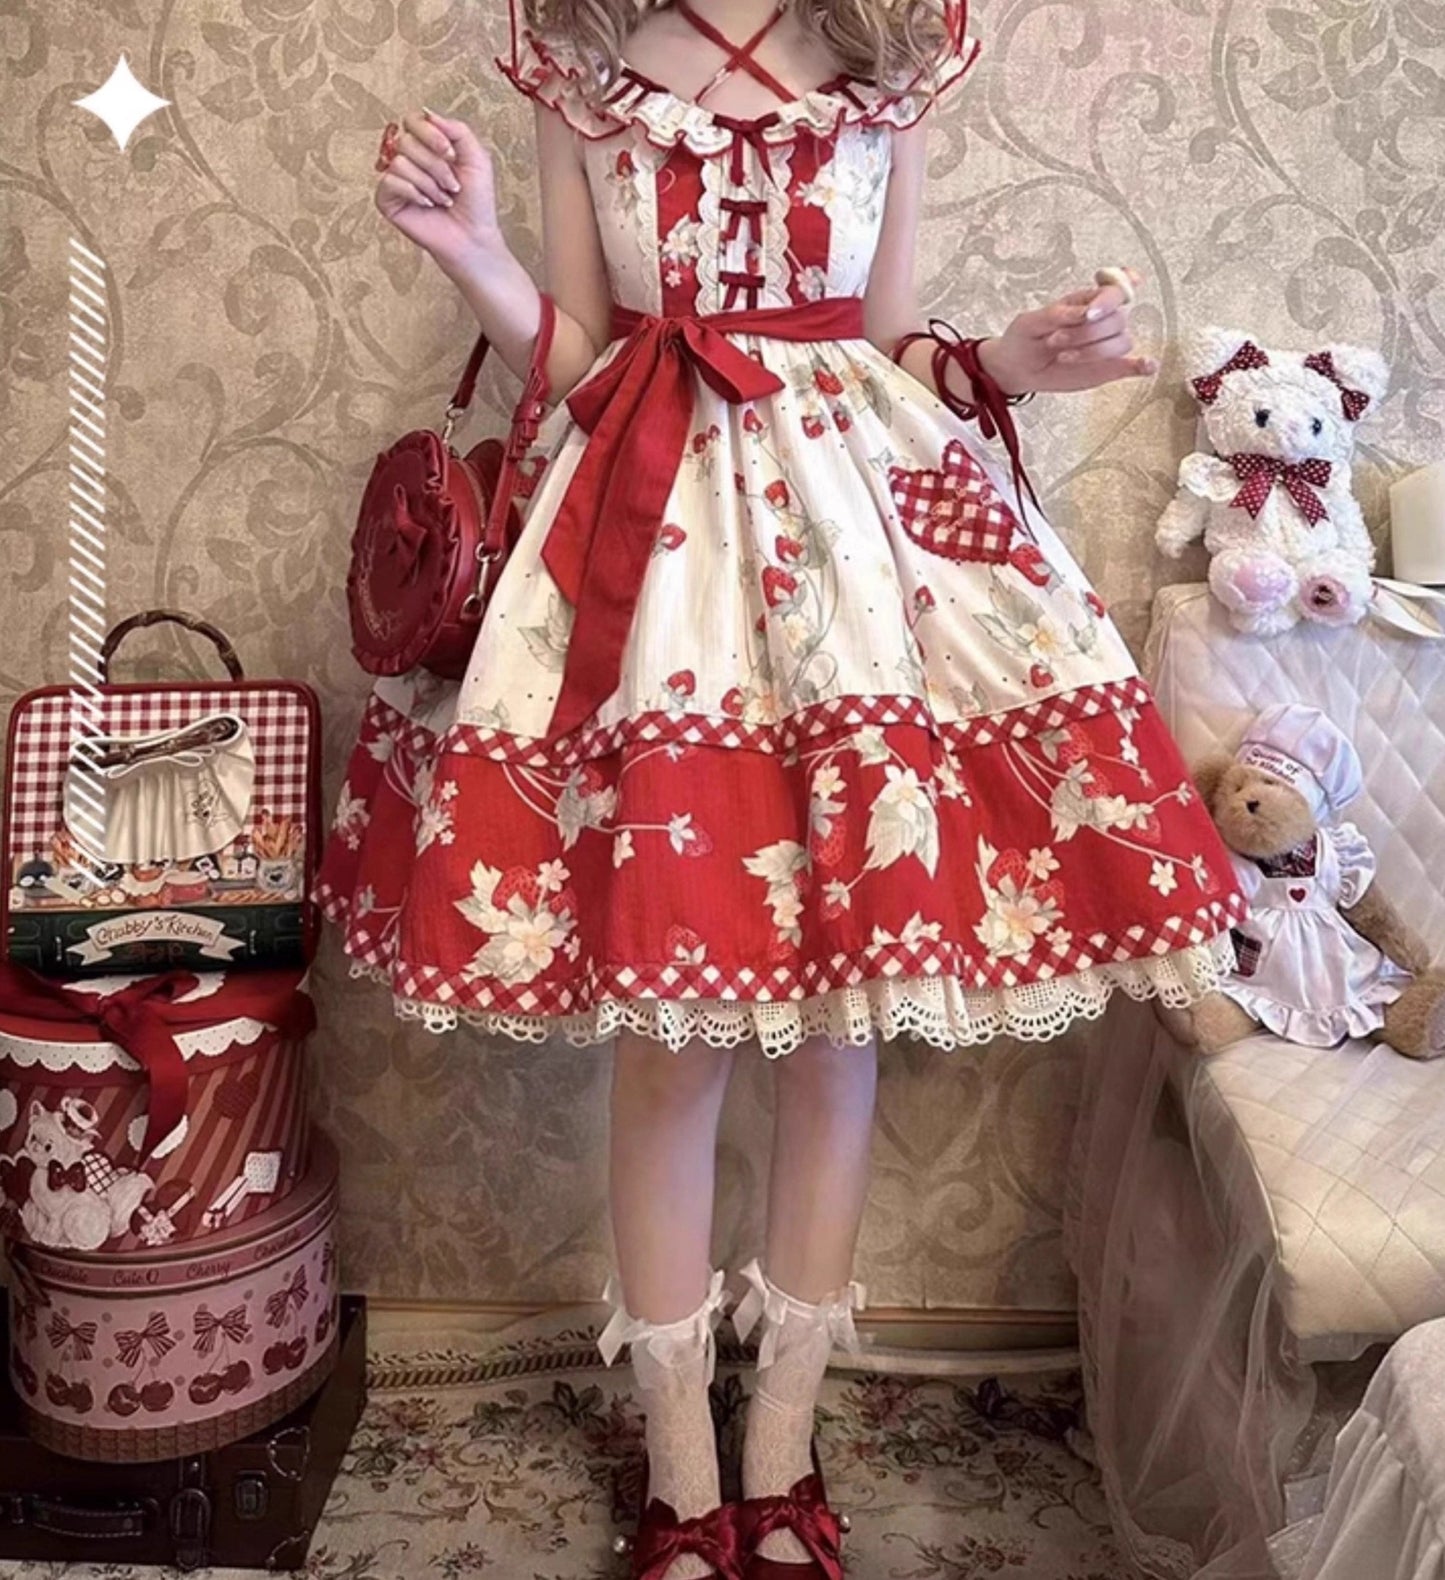 Strawberry Orchard 苺のジャンパースカート